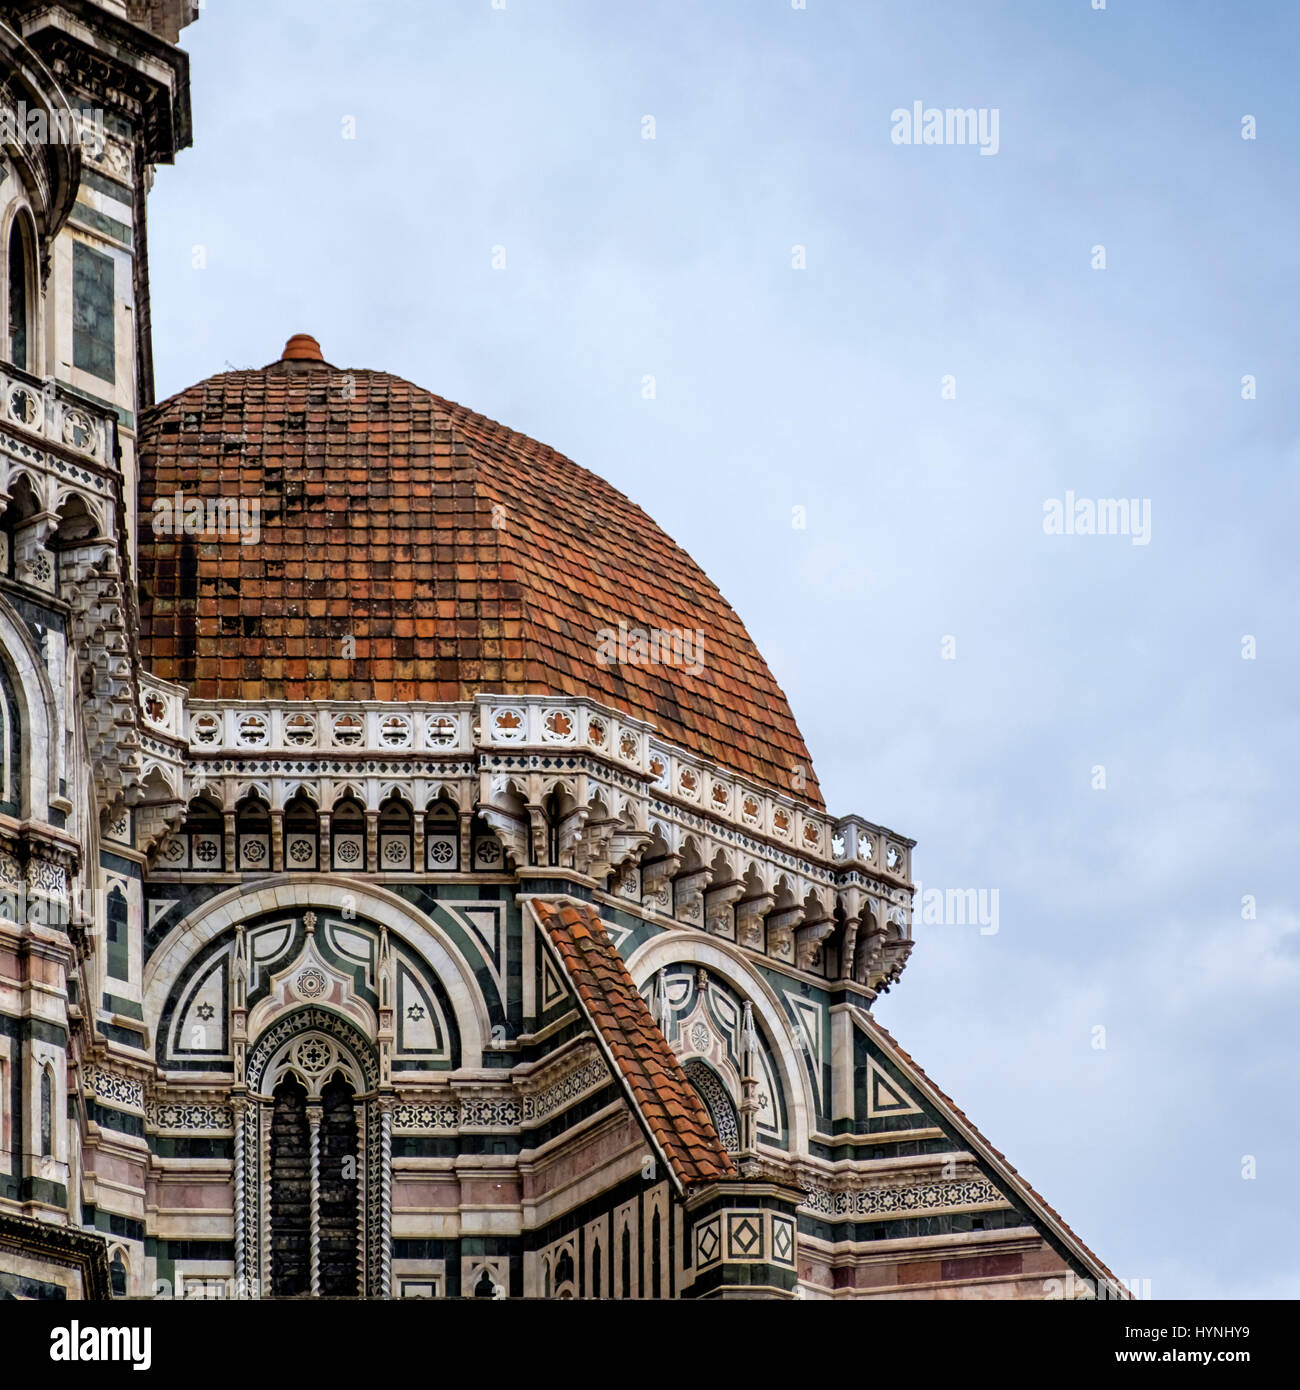 Florencia, Italia: CIRCA MAYO 2015: detalle arquitectónico de la Catedral de Florencia, Santa Maria del Fiore, conocida como el Duomo Foto de stock